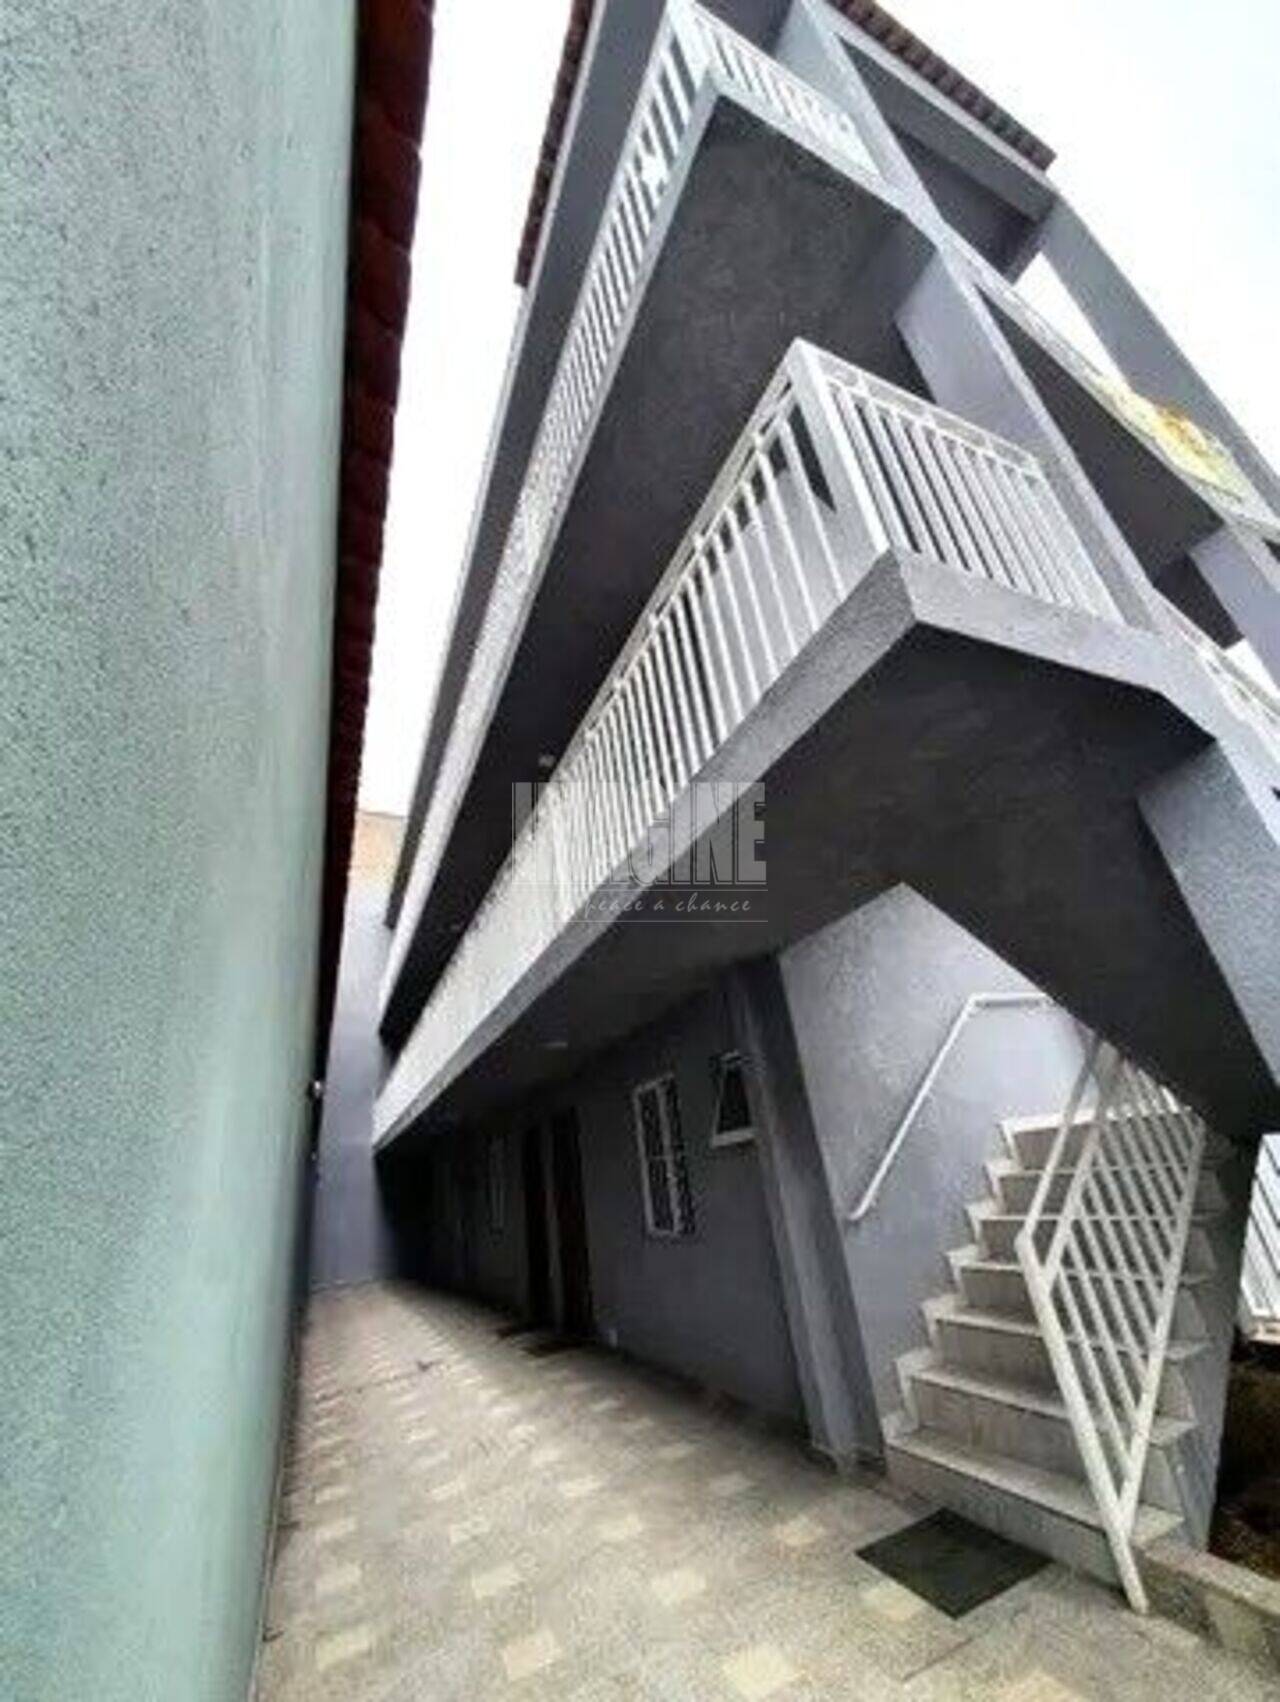 Apartamento Vila Prudente, São Paulo - SP